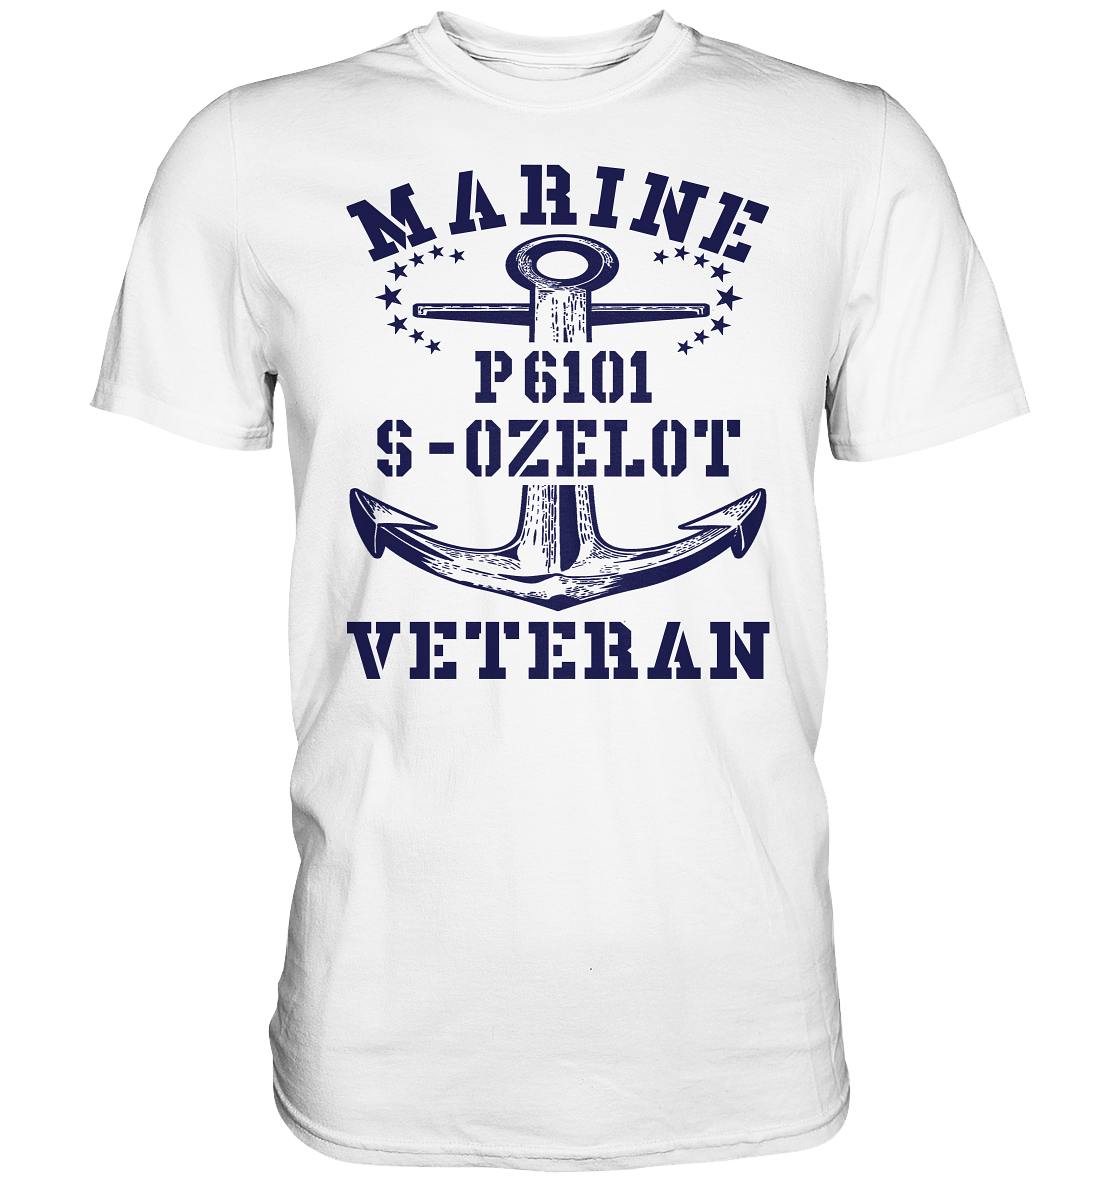 P6101 S-OZELOT Marine Veteran - Premium Shirt